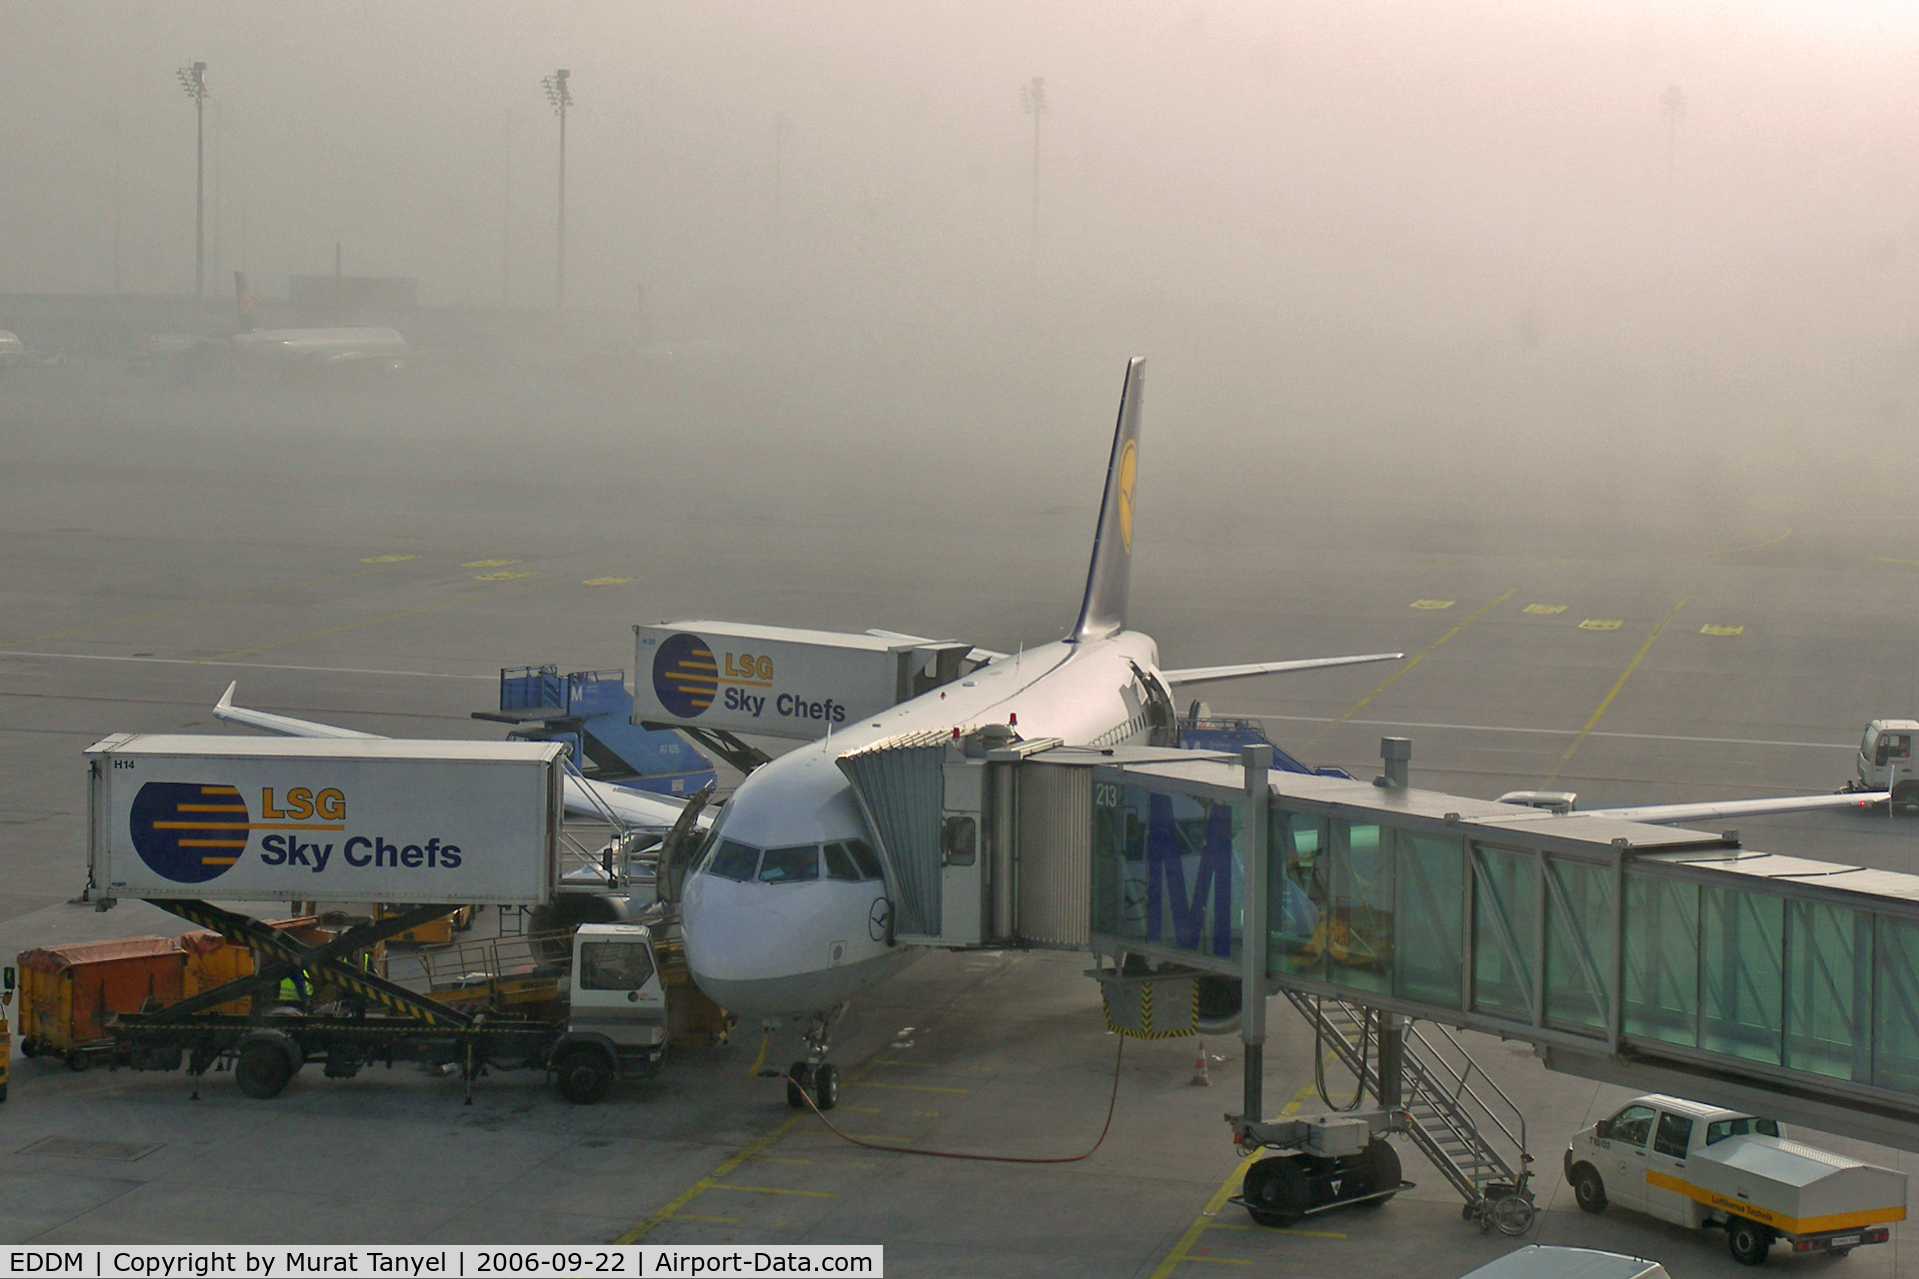 Munich International Airport (Franz Josef Strauß International Airport), Munich Germany (EDDM) - Munich International Airport gate # 213 in the early morning fog